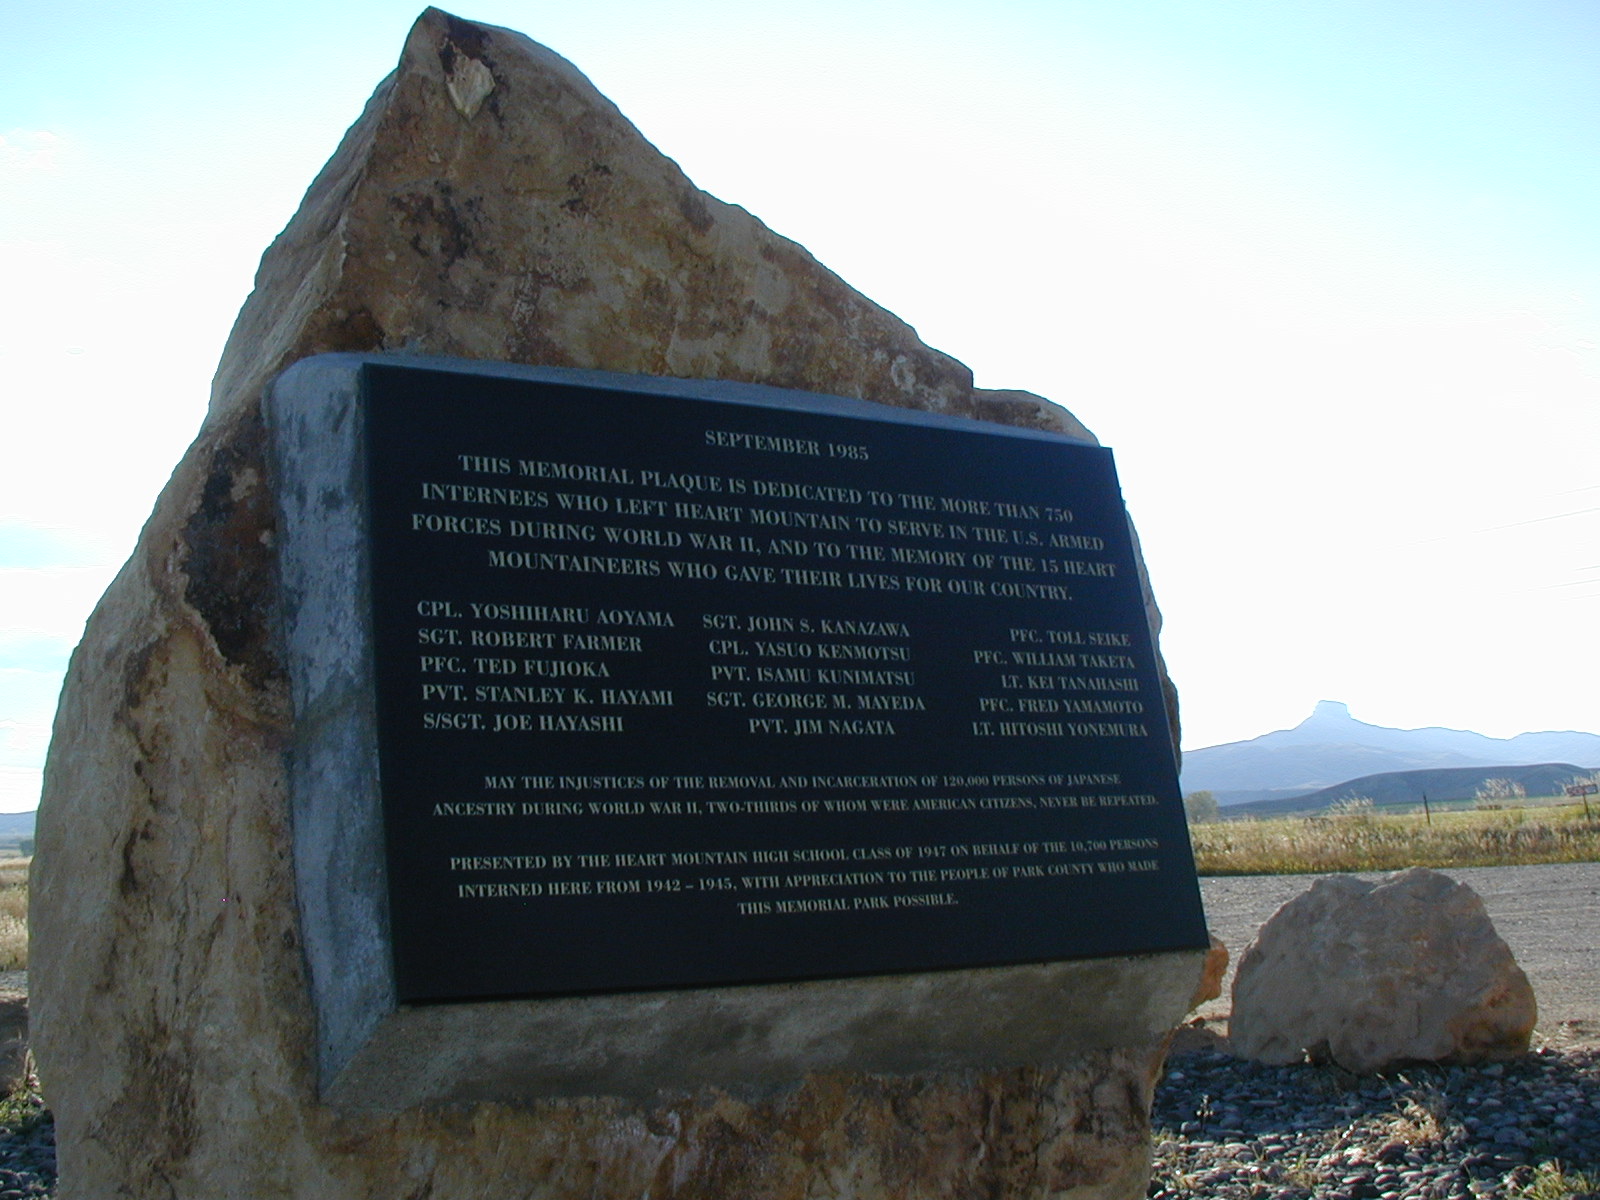 Heart Mountain memorial